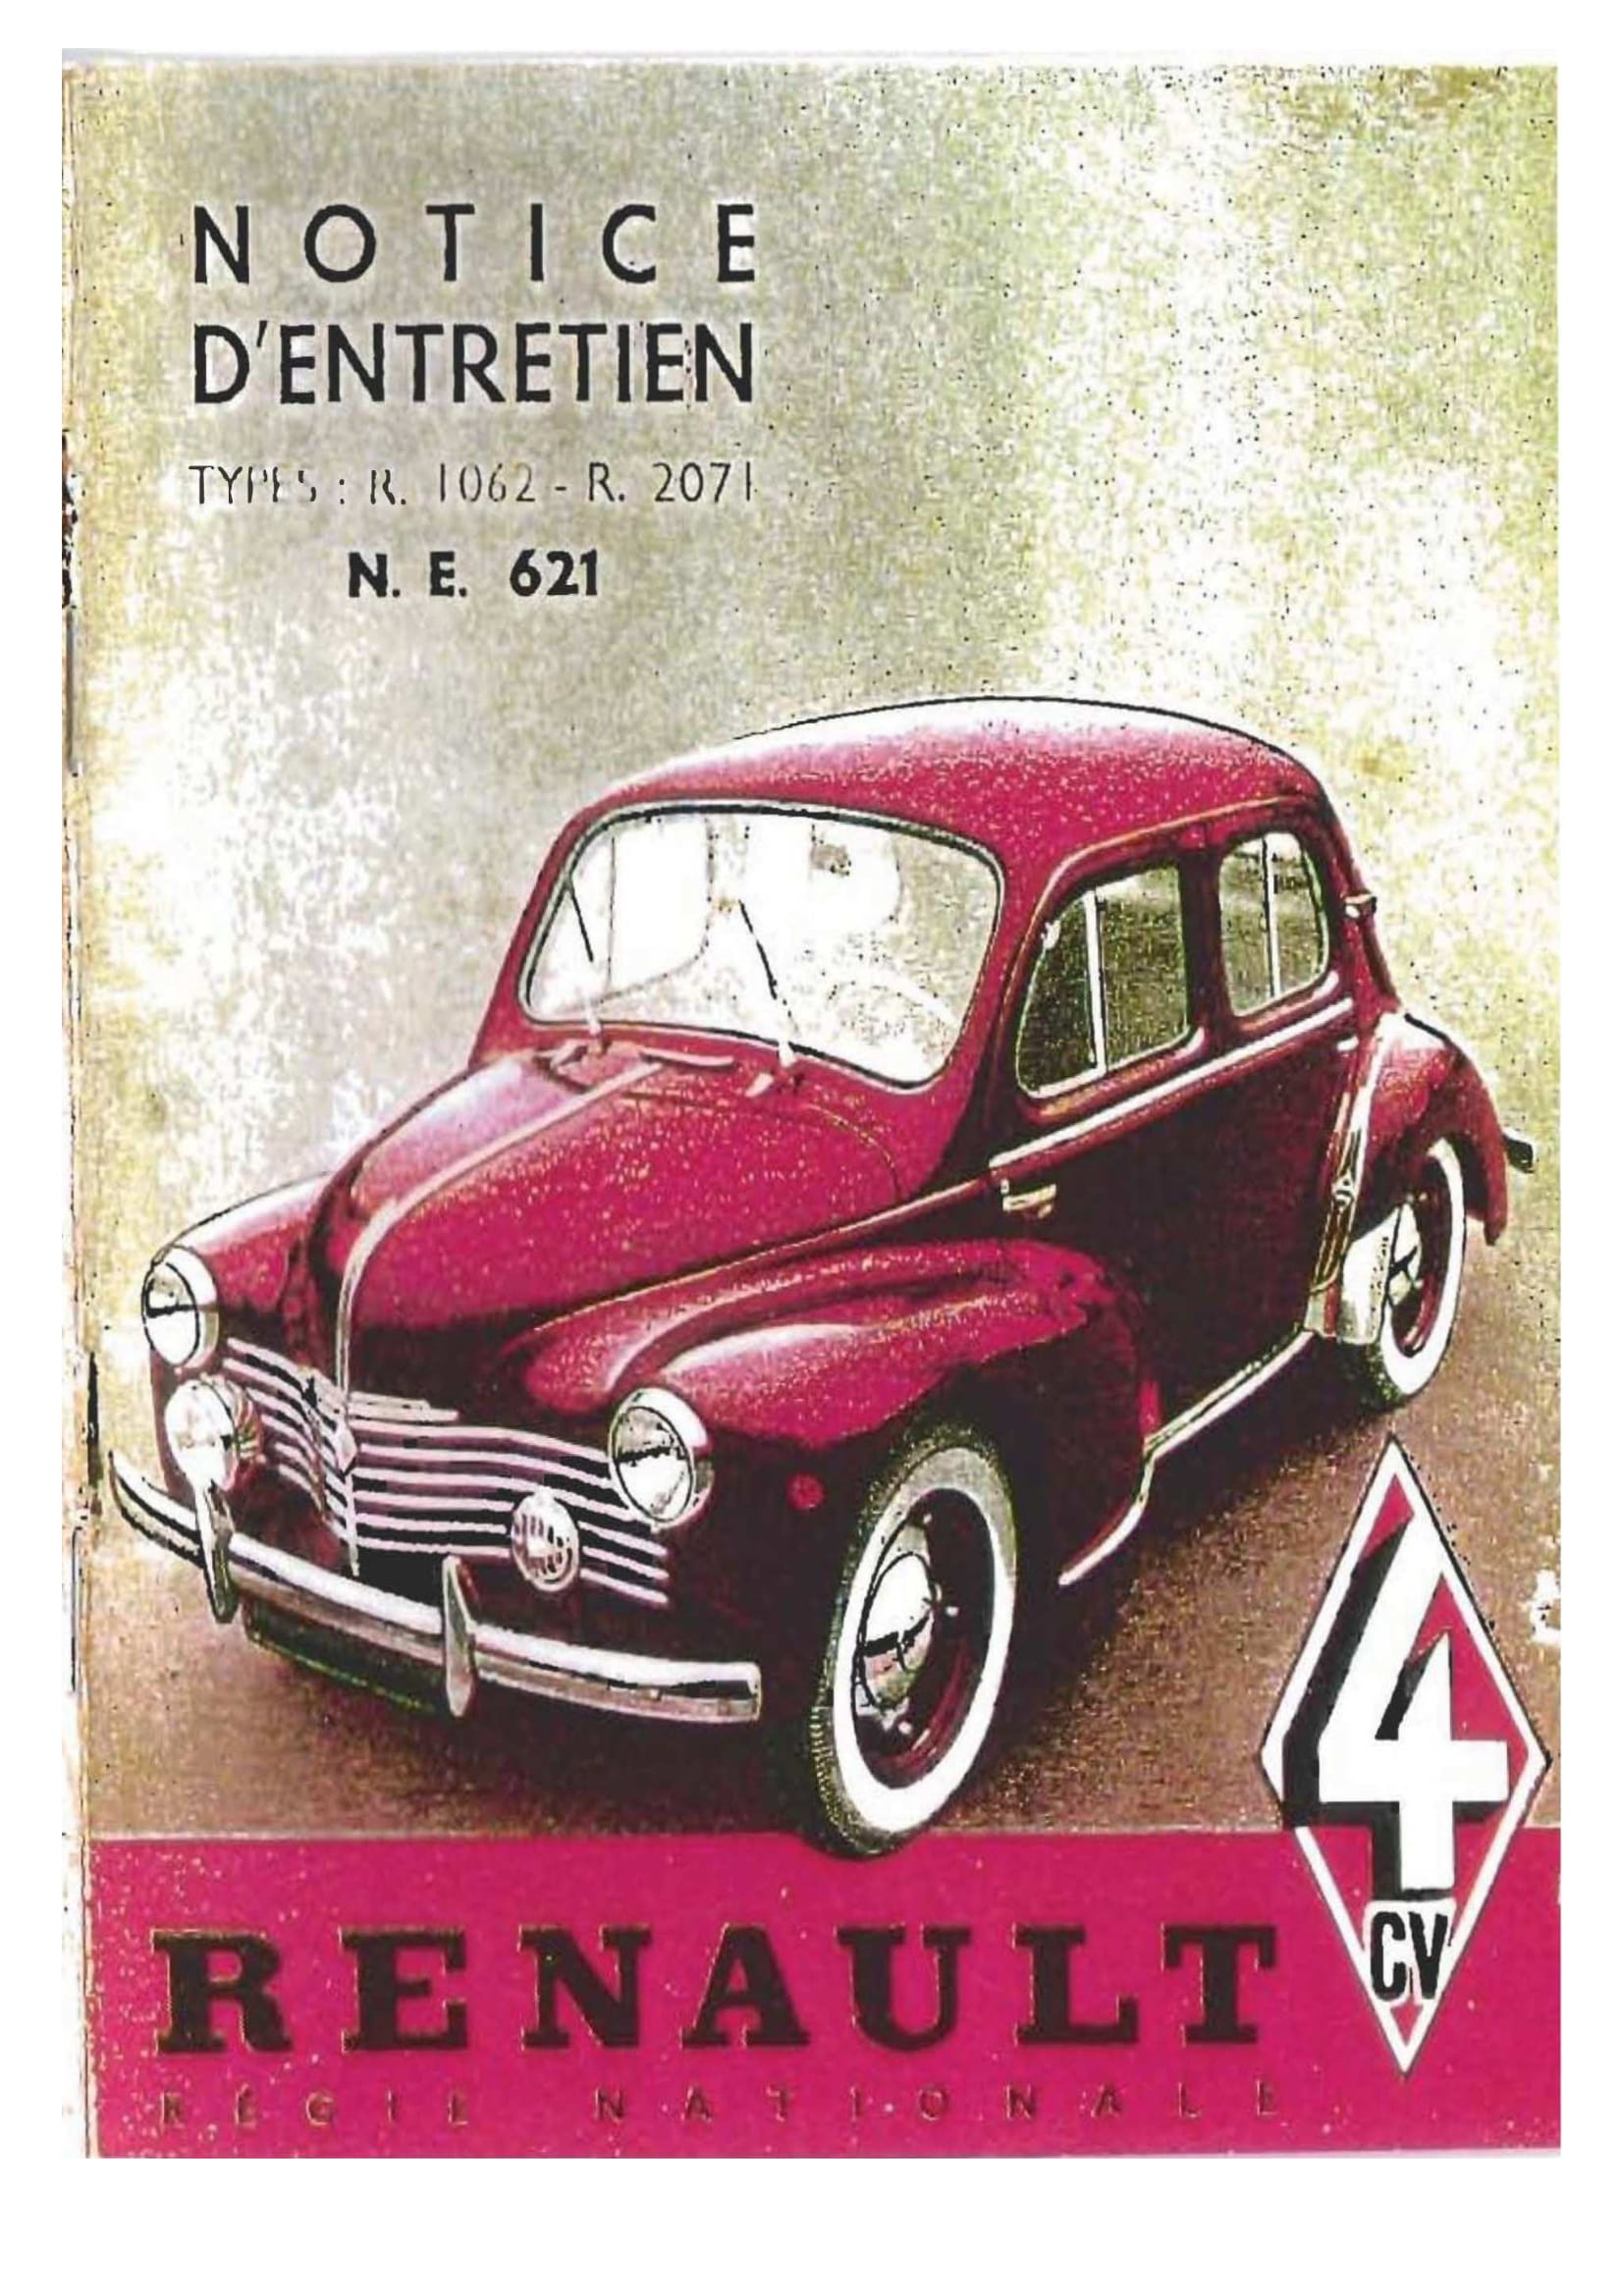 Notice Renault 4cv de 1952 NE621 R2071